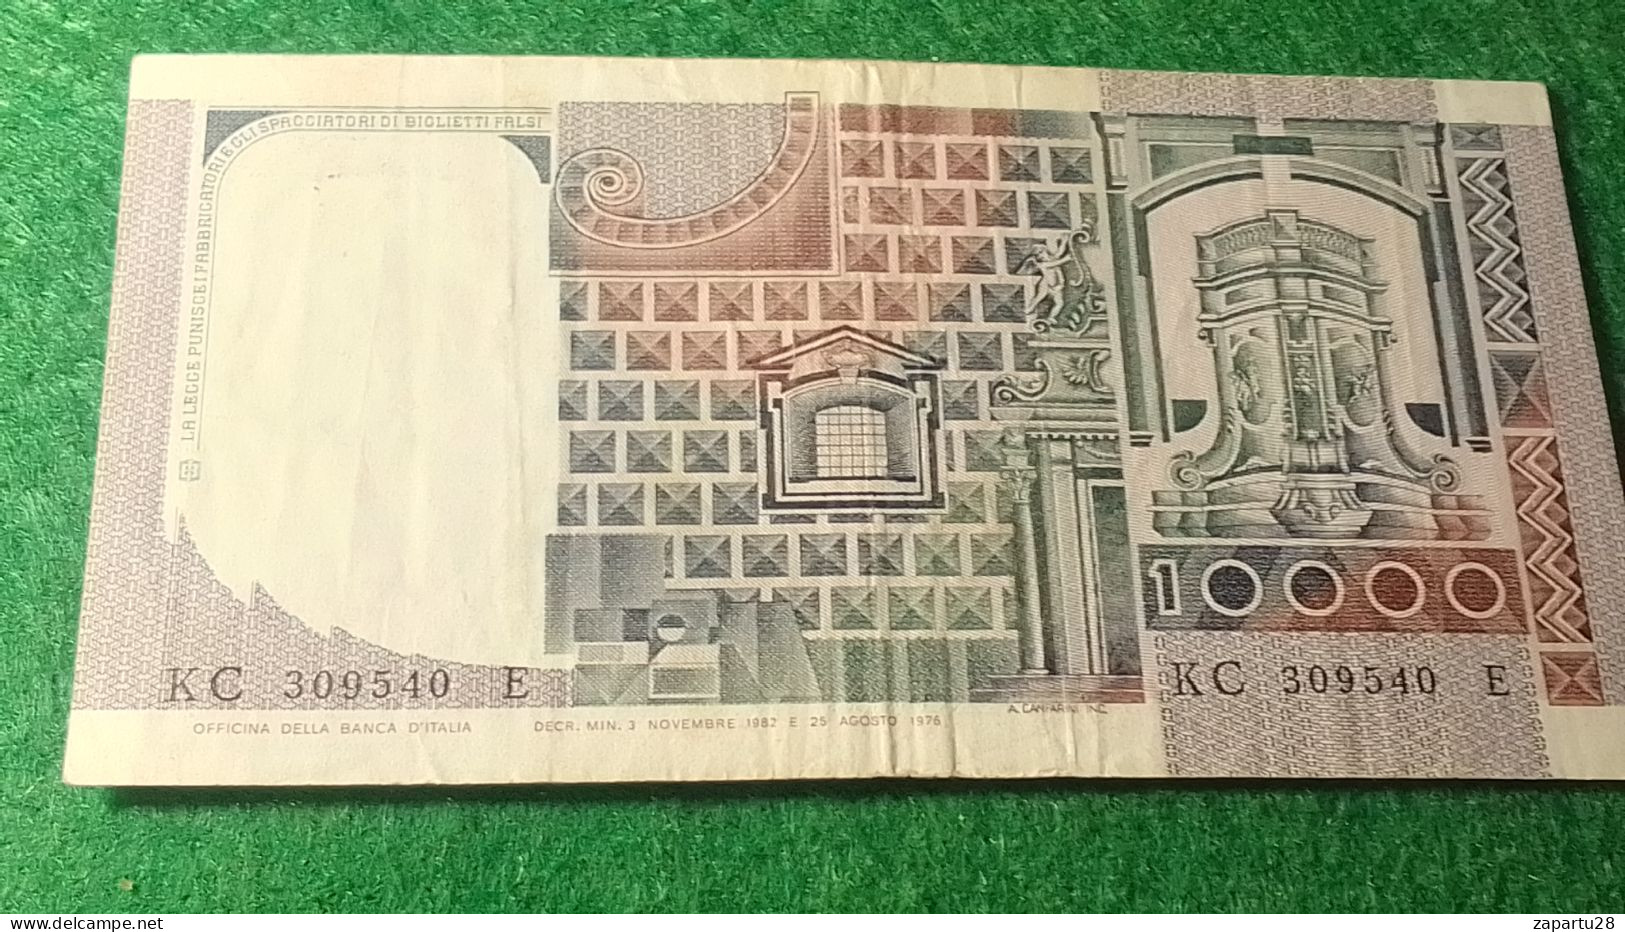 İTALYA-1980- 90 10 000 LİRE - 10.000 Lire